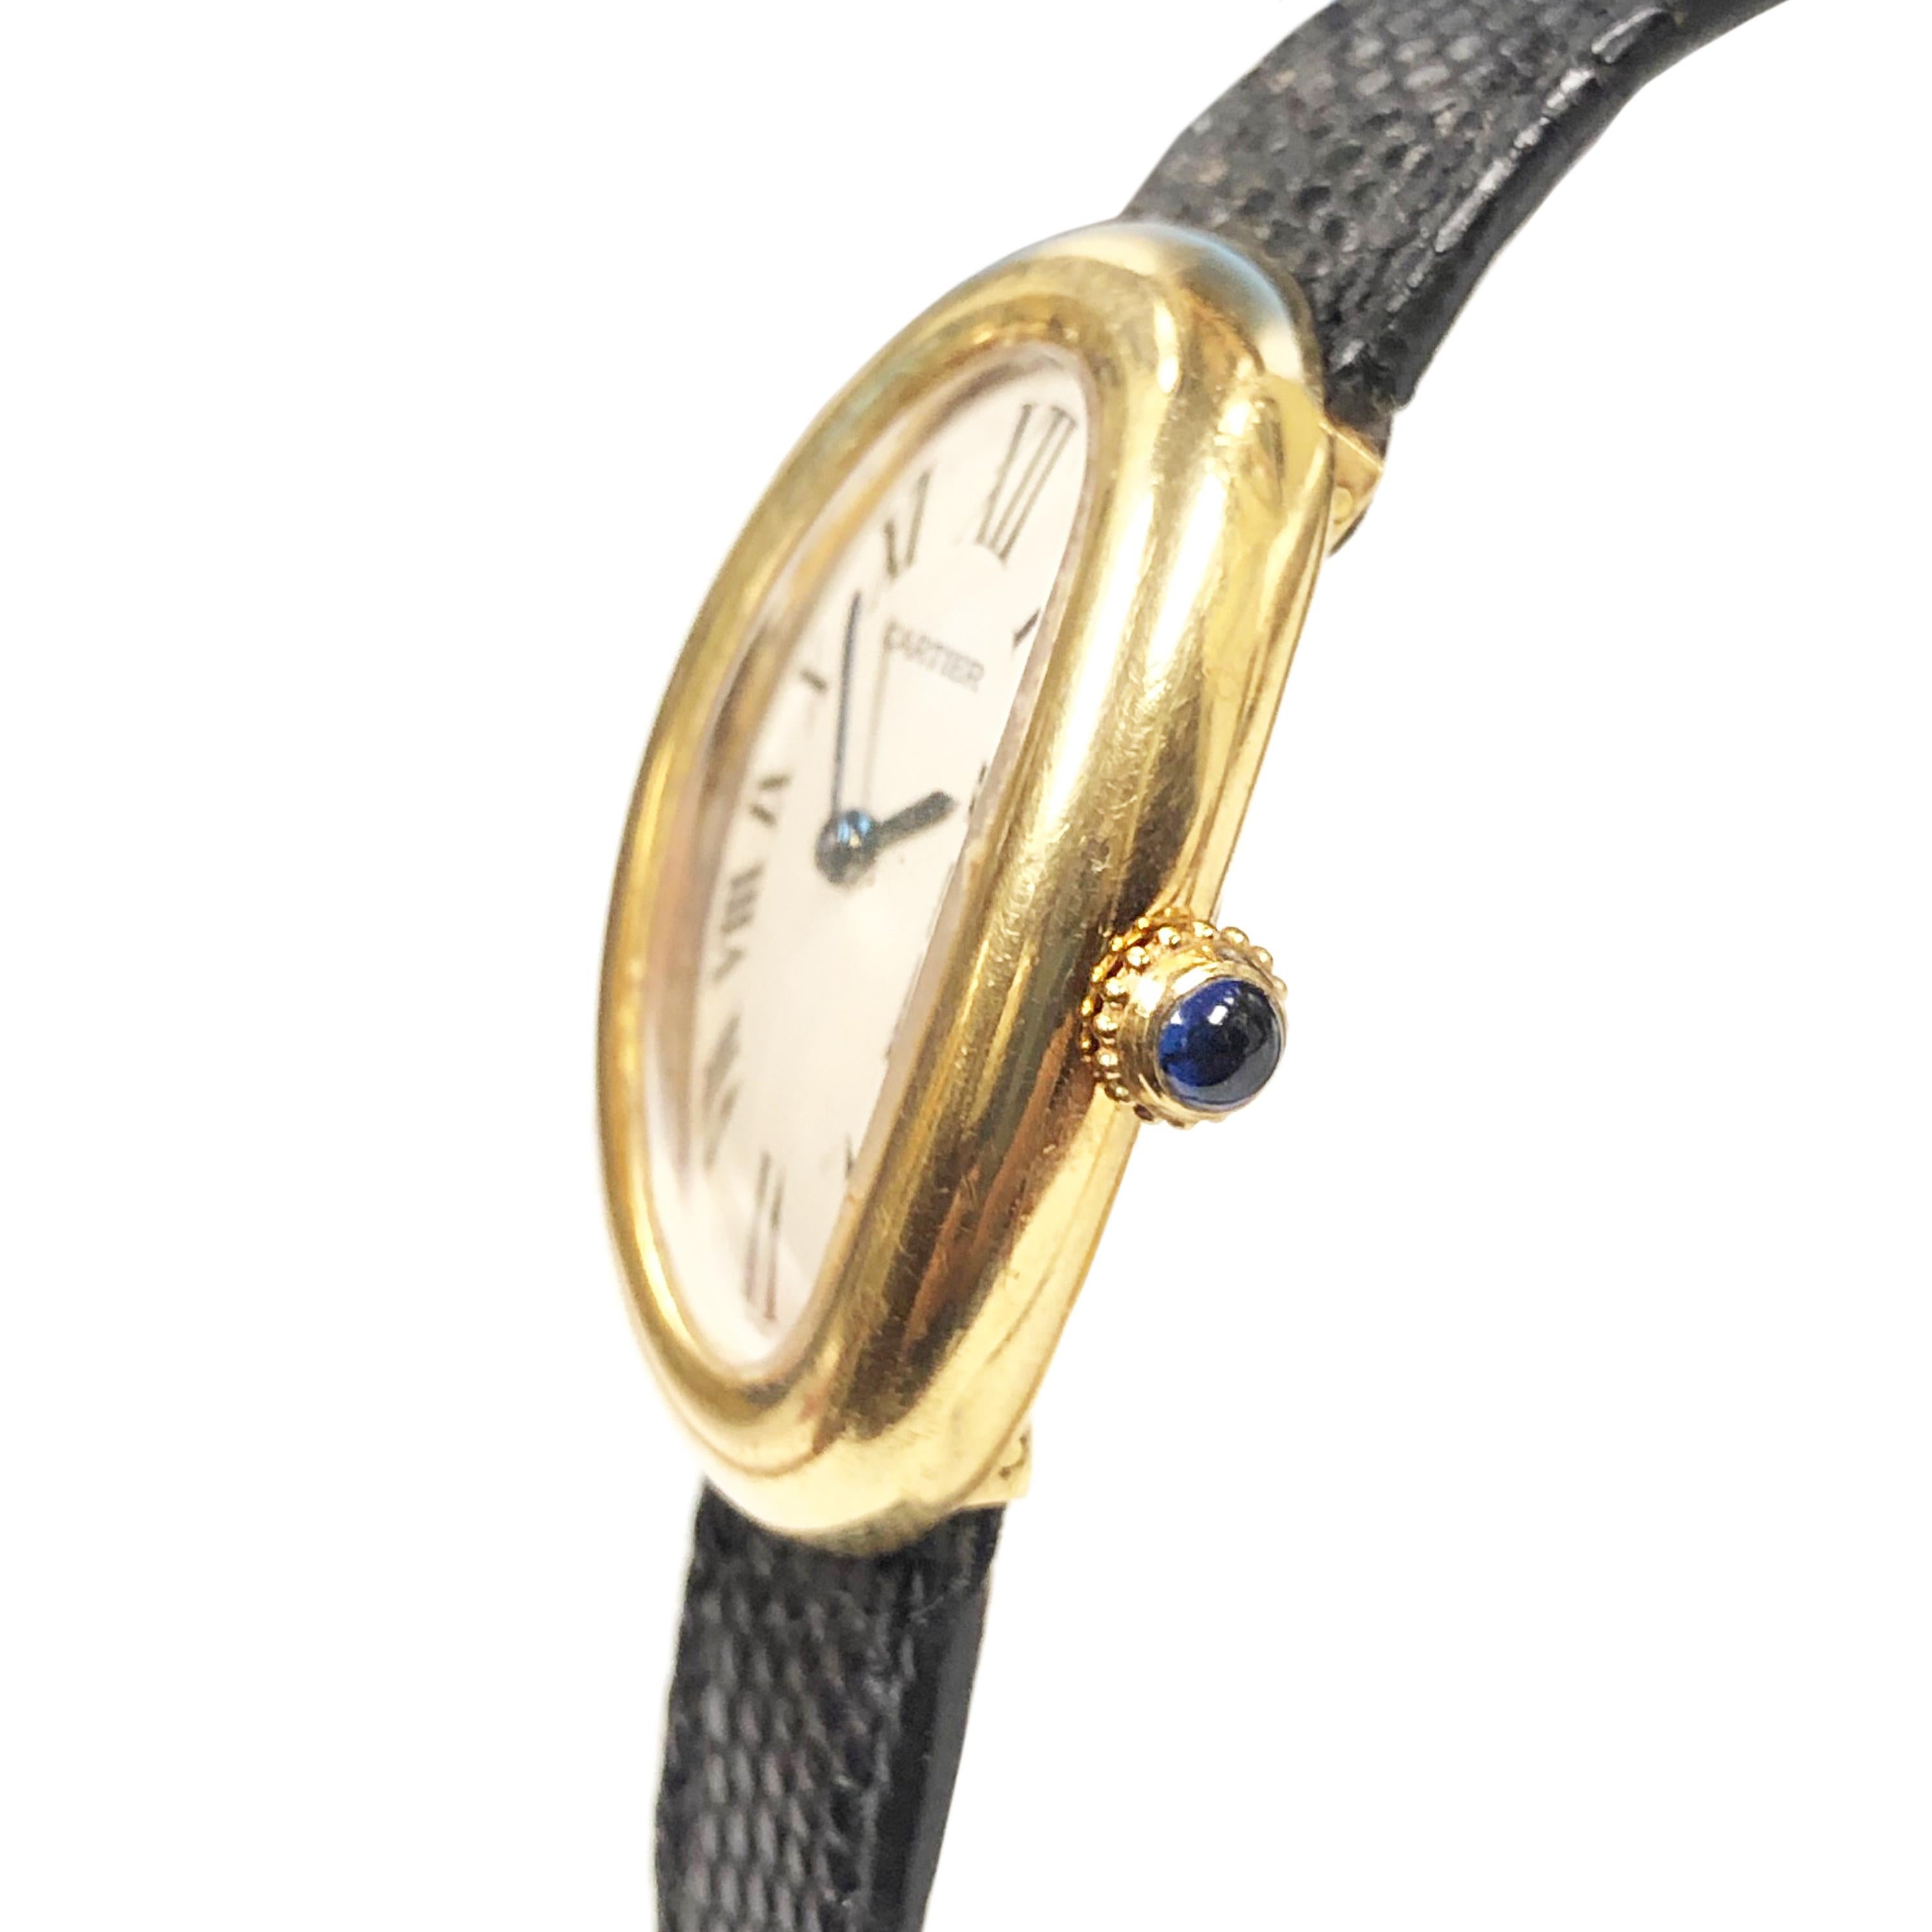 Montre-bracelet de la collection Baignoire de Cartier datant de 1980, portée par l'icône d'Hollywood Jerry Lewis. boîtier en or jaune 18 carats de 31 x 23 mm, résistant à l'eau. Mouvement à quartz, cadran blanc avec chiffres romains noirs. Bracelet